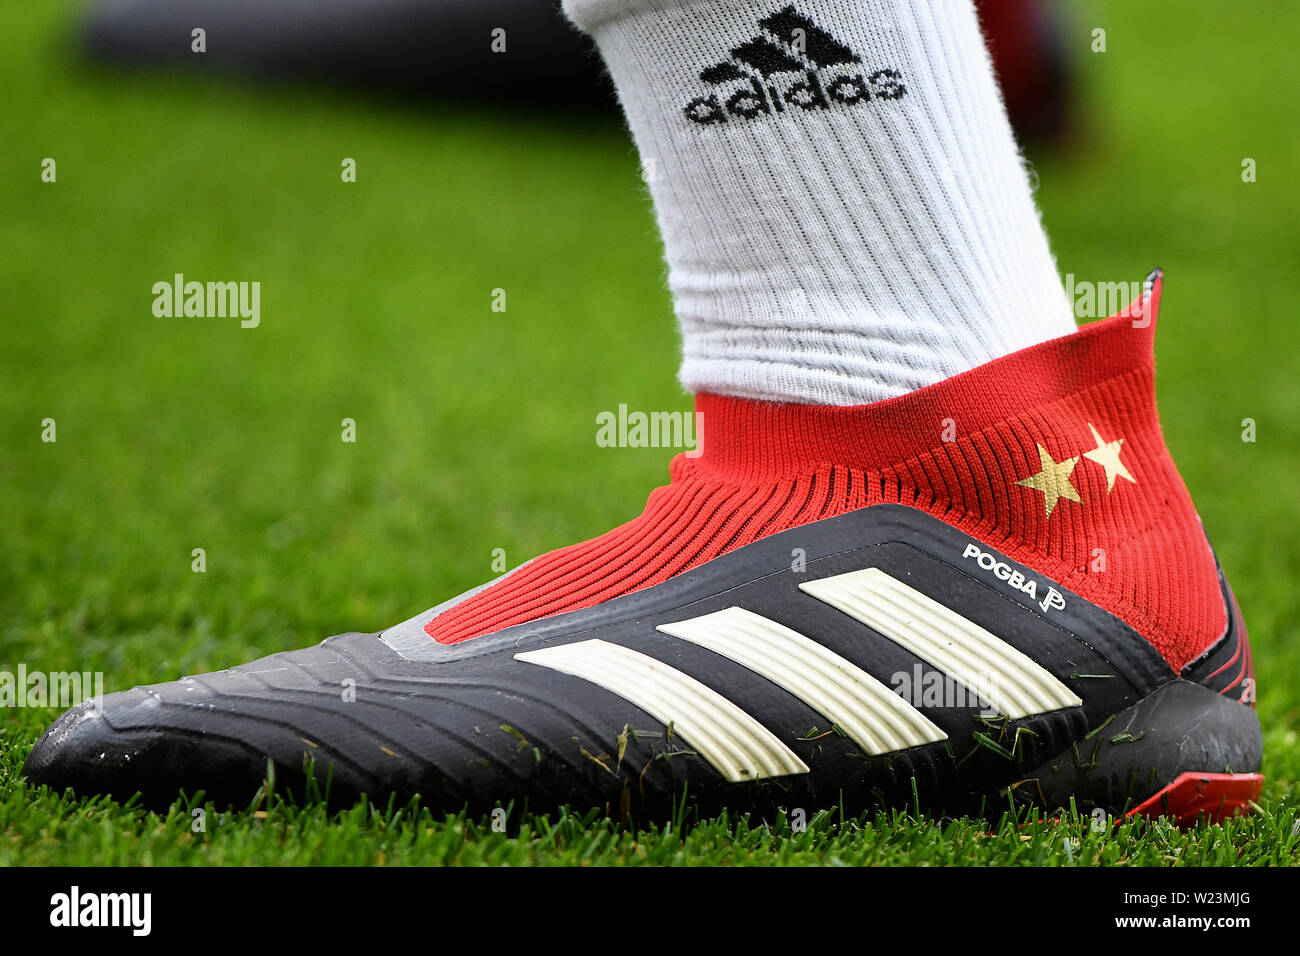 Die Adidas Stiefel von Paul Pogba von Manchester United - Brighton & Hove  Albion v Manchester United, Premier League, Amex Stadion, Brighton - 19.  August 2018 Stockfotografie - Alamy